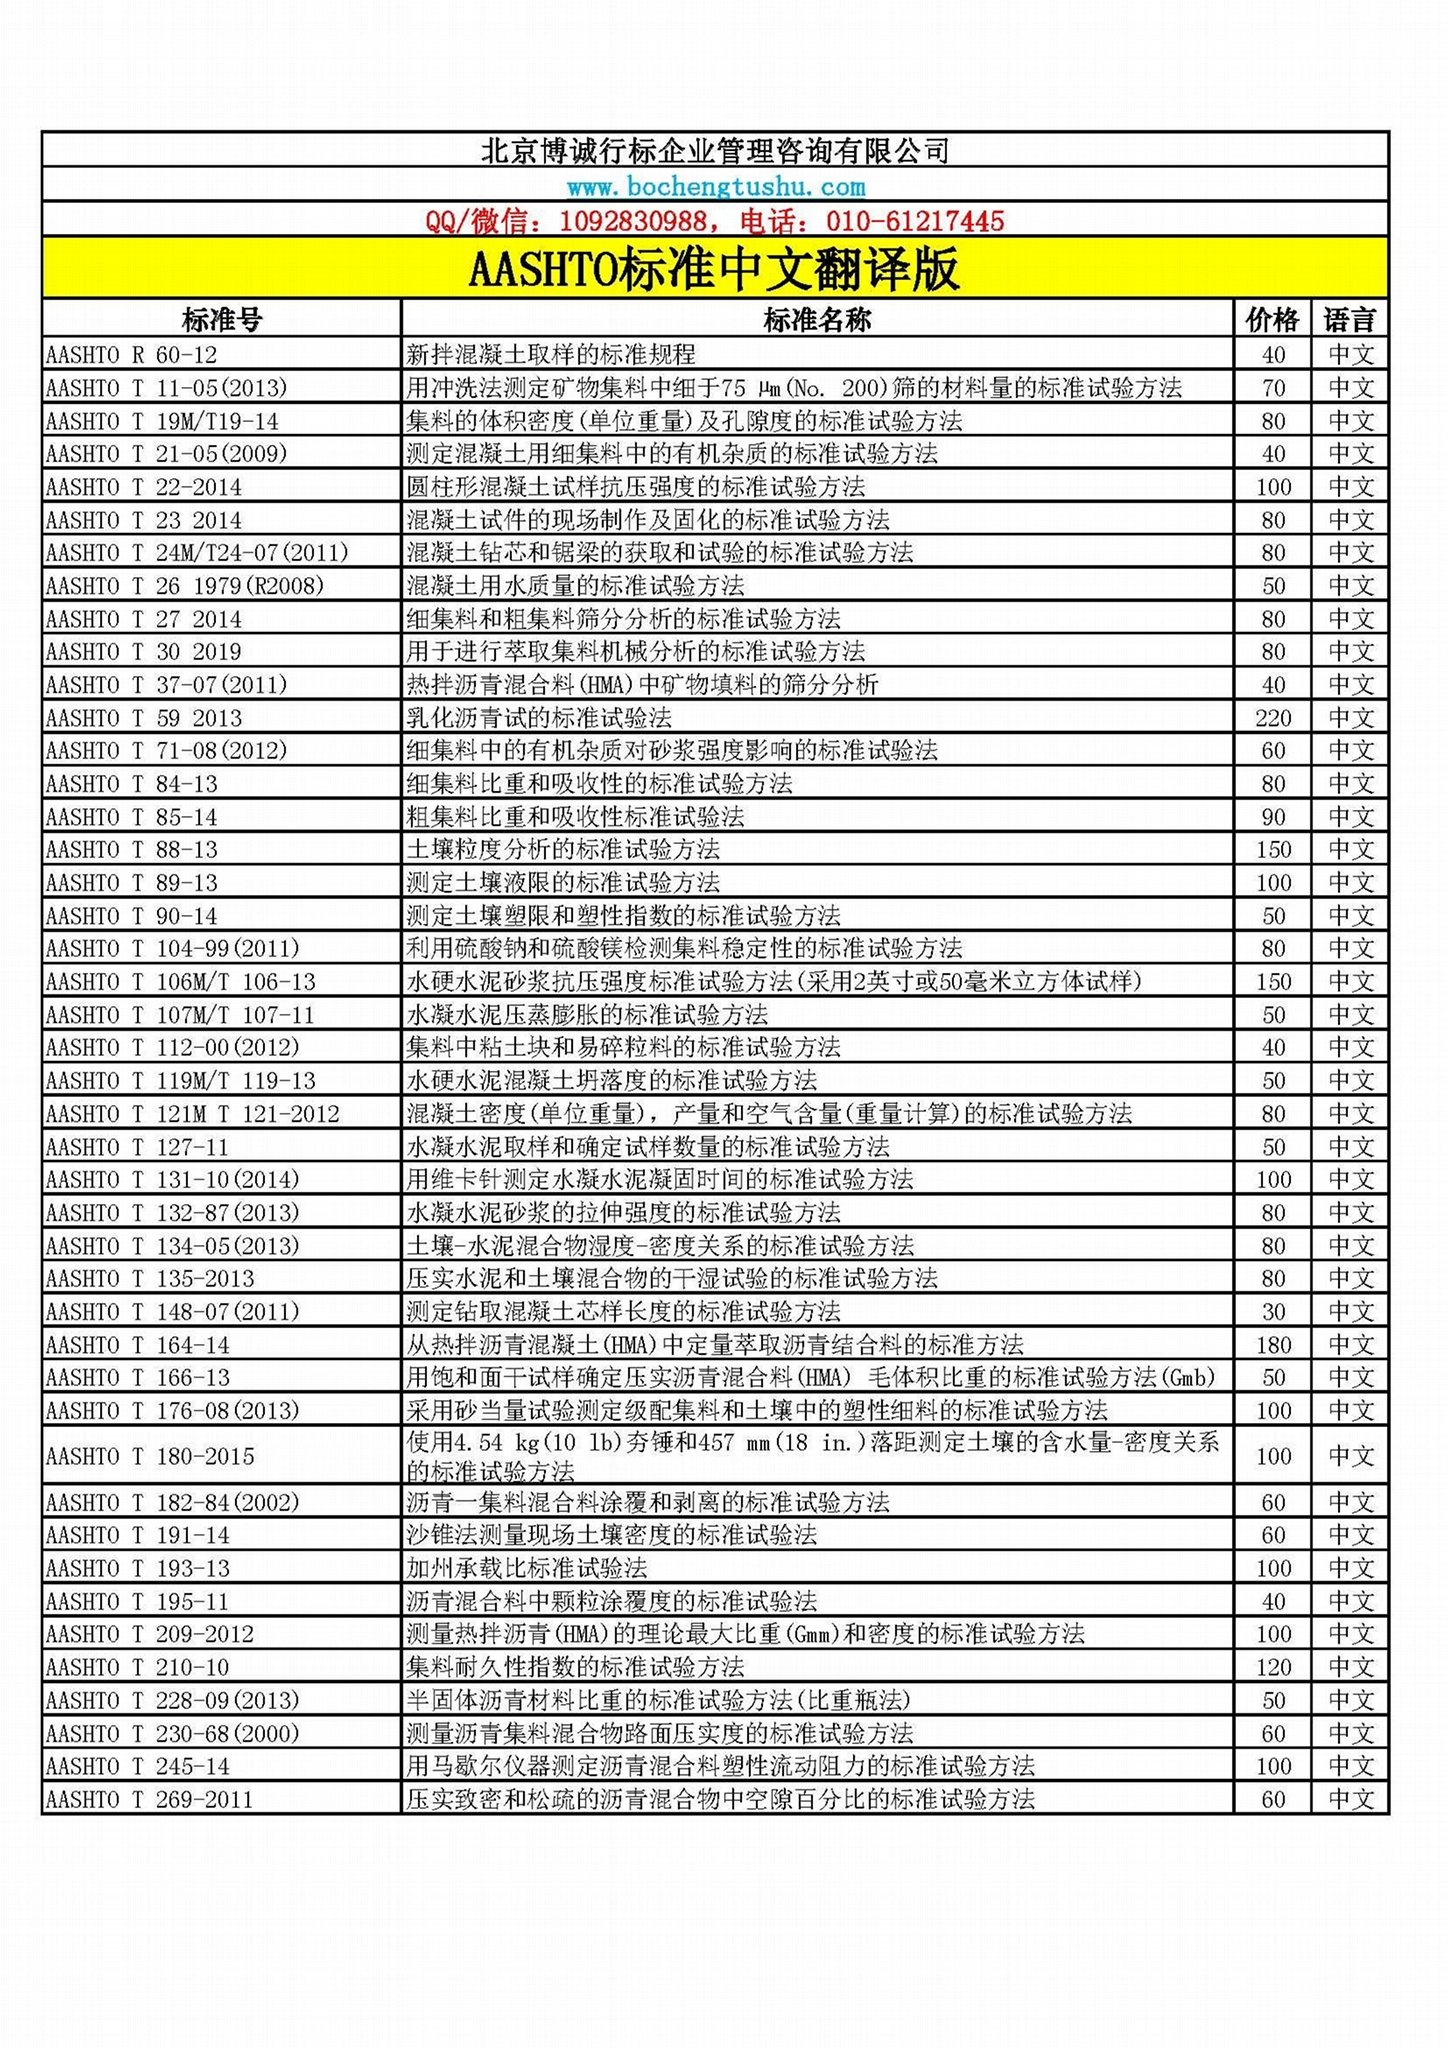 AASHTO公路标准中文版资料 2